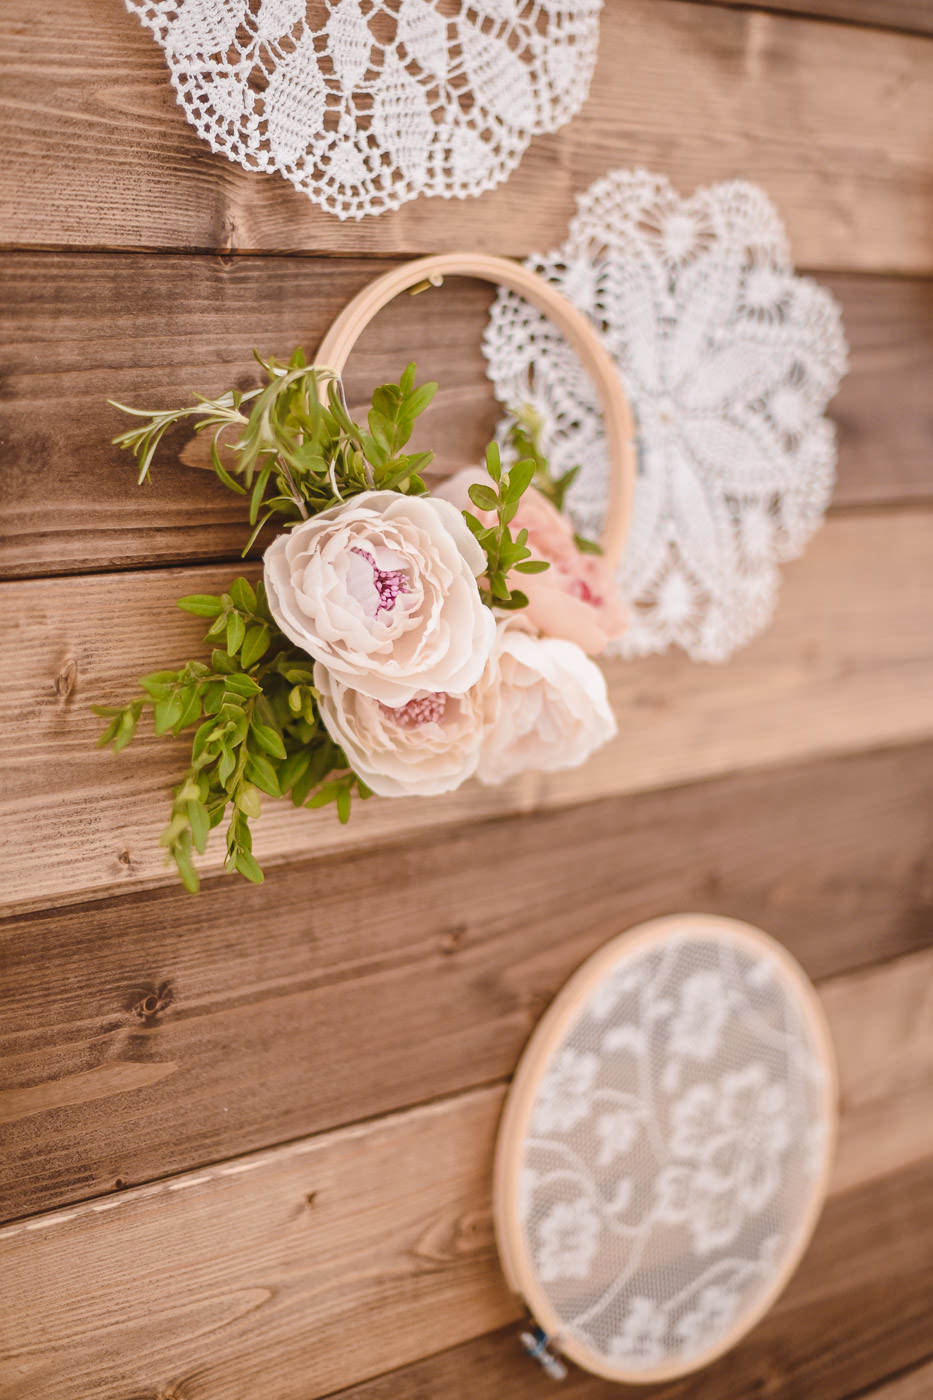 Susan&Sis decor – svadobna vyzdoba, dekorovanie- svadba v bielom stane- ruzova jemna vyzdoba, ruze, vela kvetov, ruzove stuhy